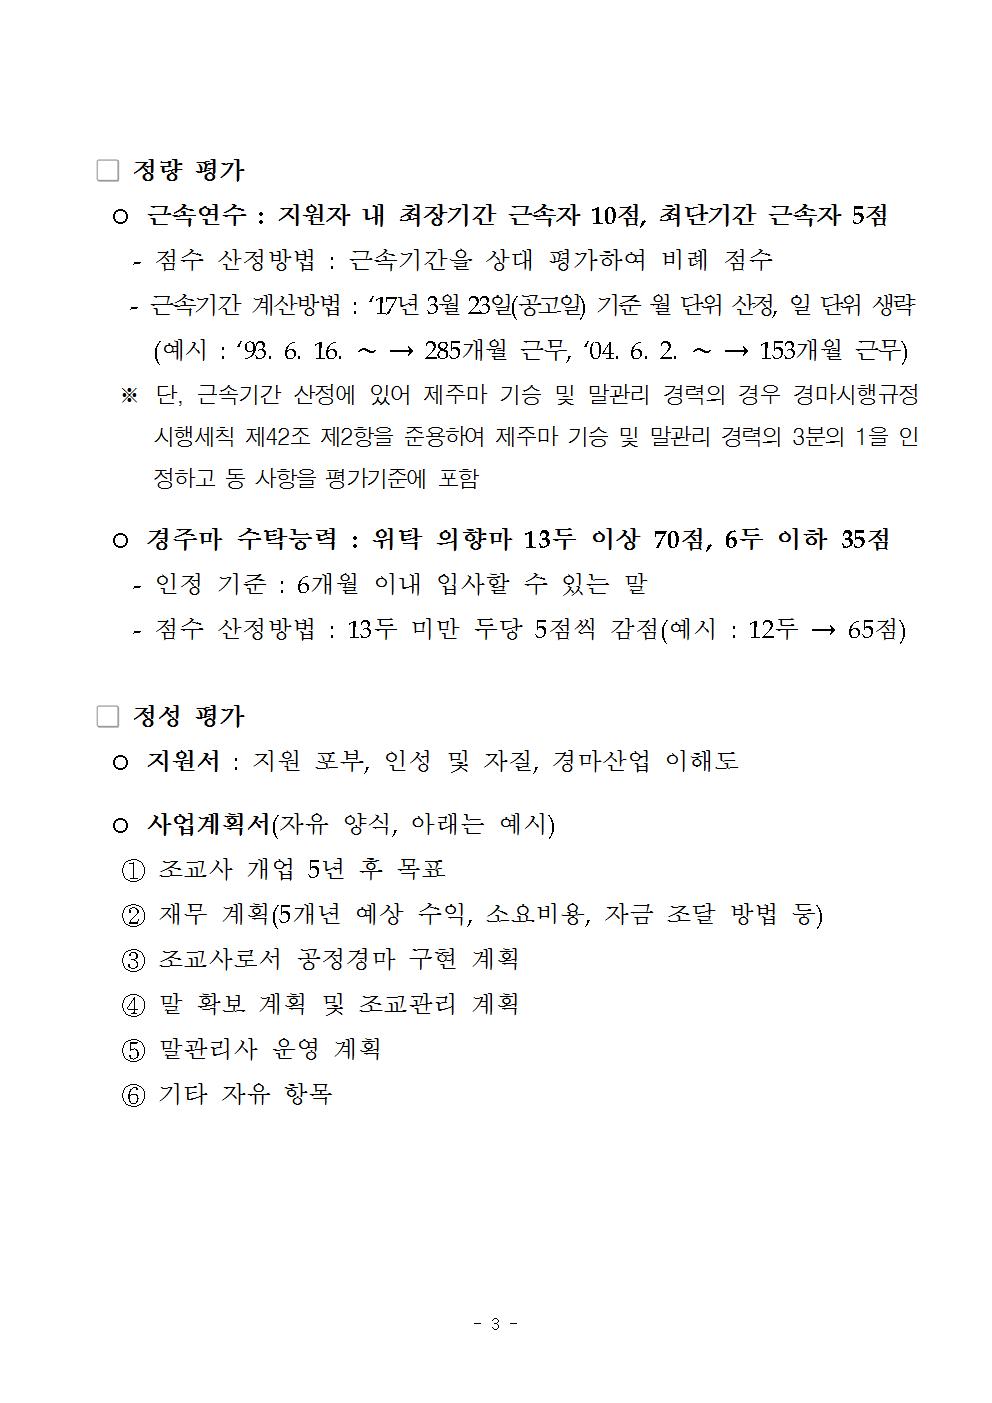 (협회공지용) 렛츠런파크 서울 신규 개업 조교사 선발 및 평가 기준003.jpg